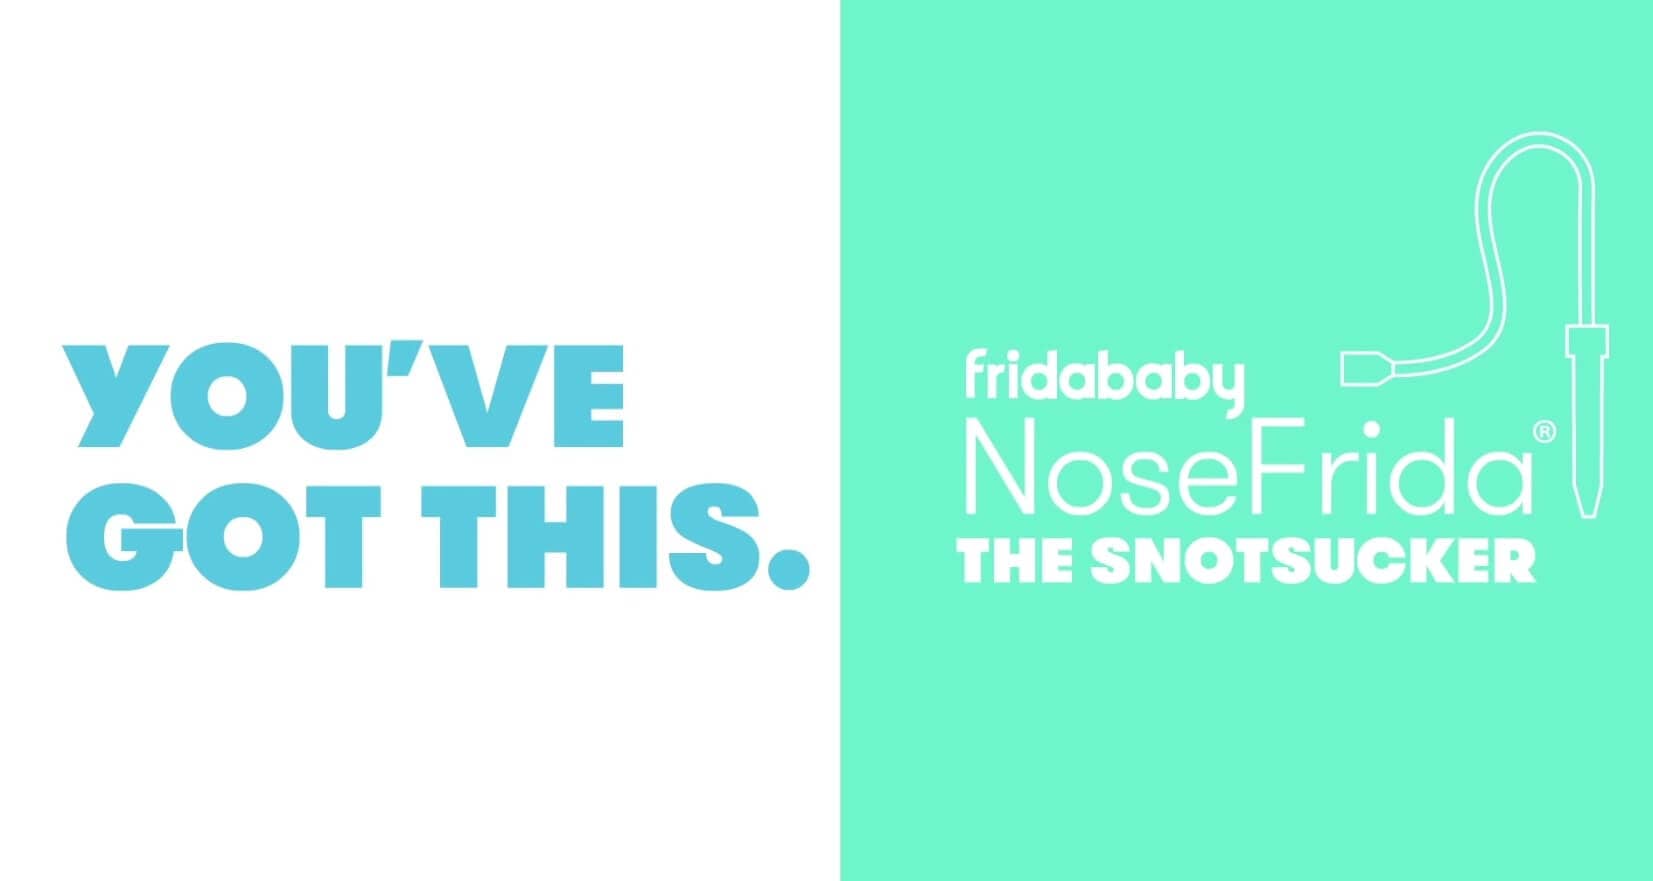 NoseFrida's Snotsucker demo video.